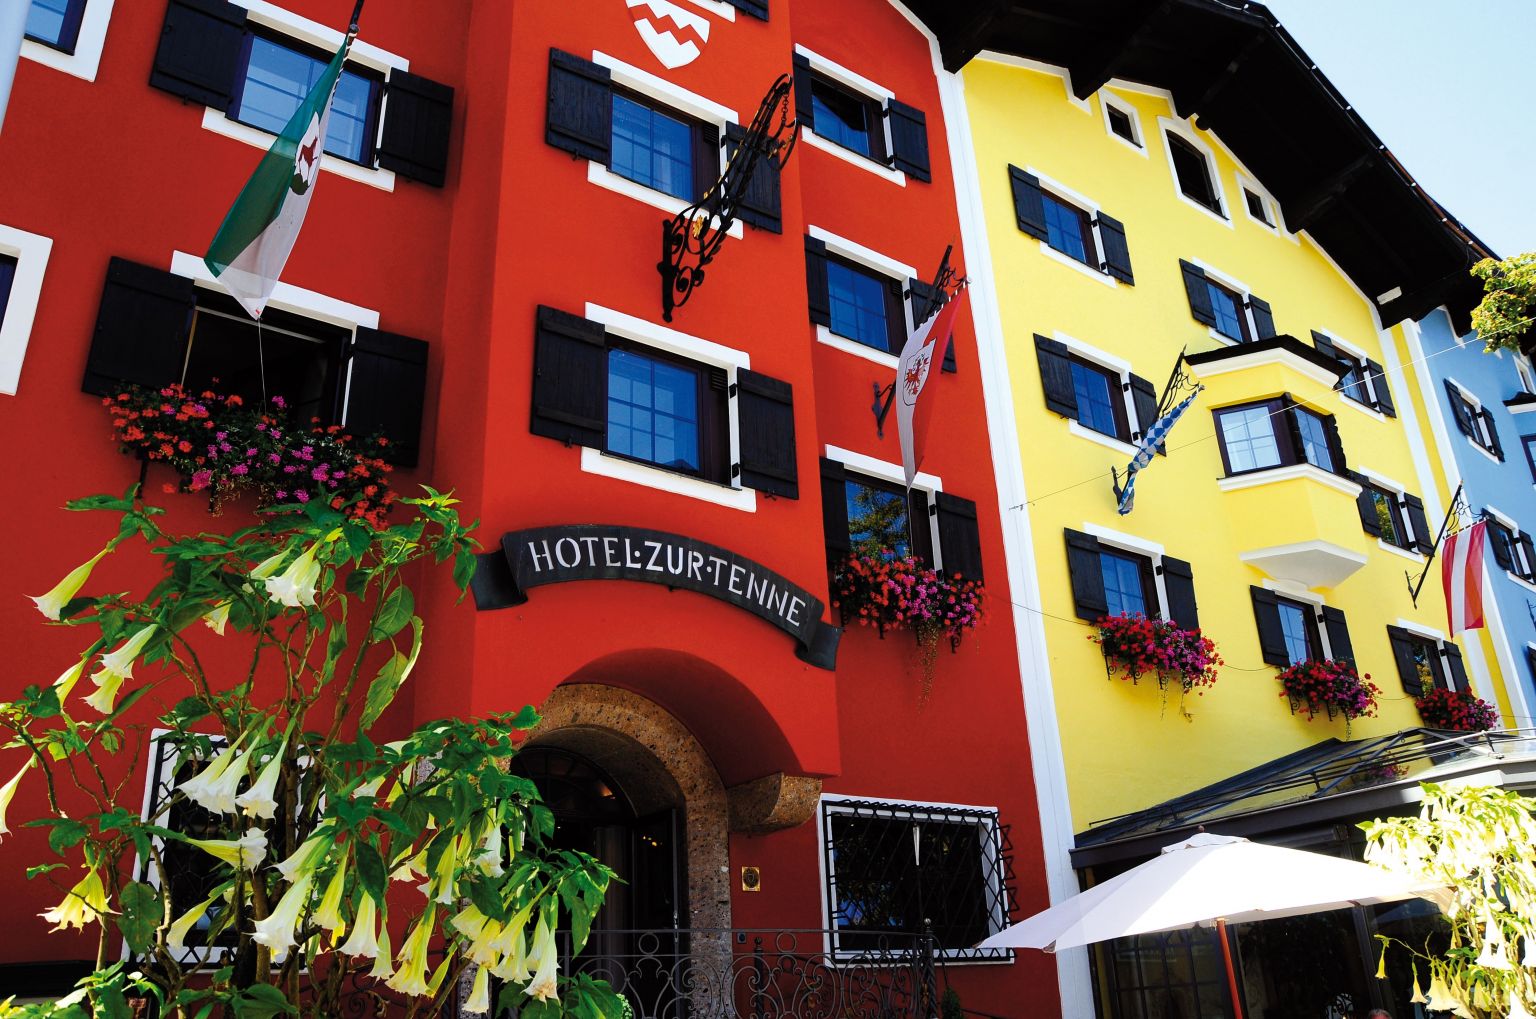 Hotel zur Tenne in Kitzbühel wechselt den Besitzer